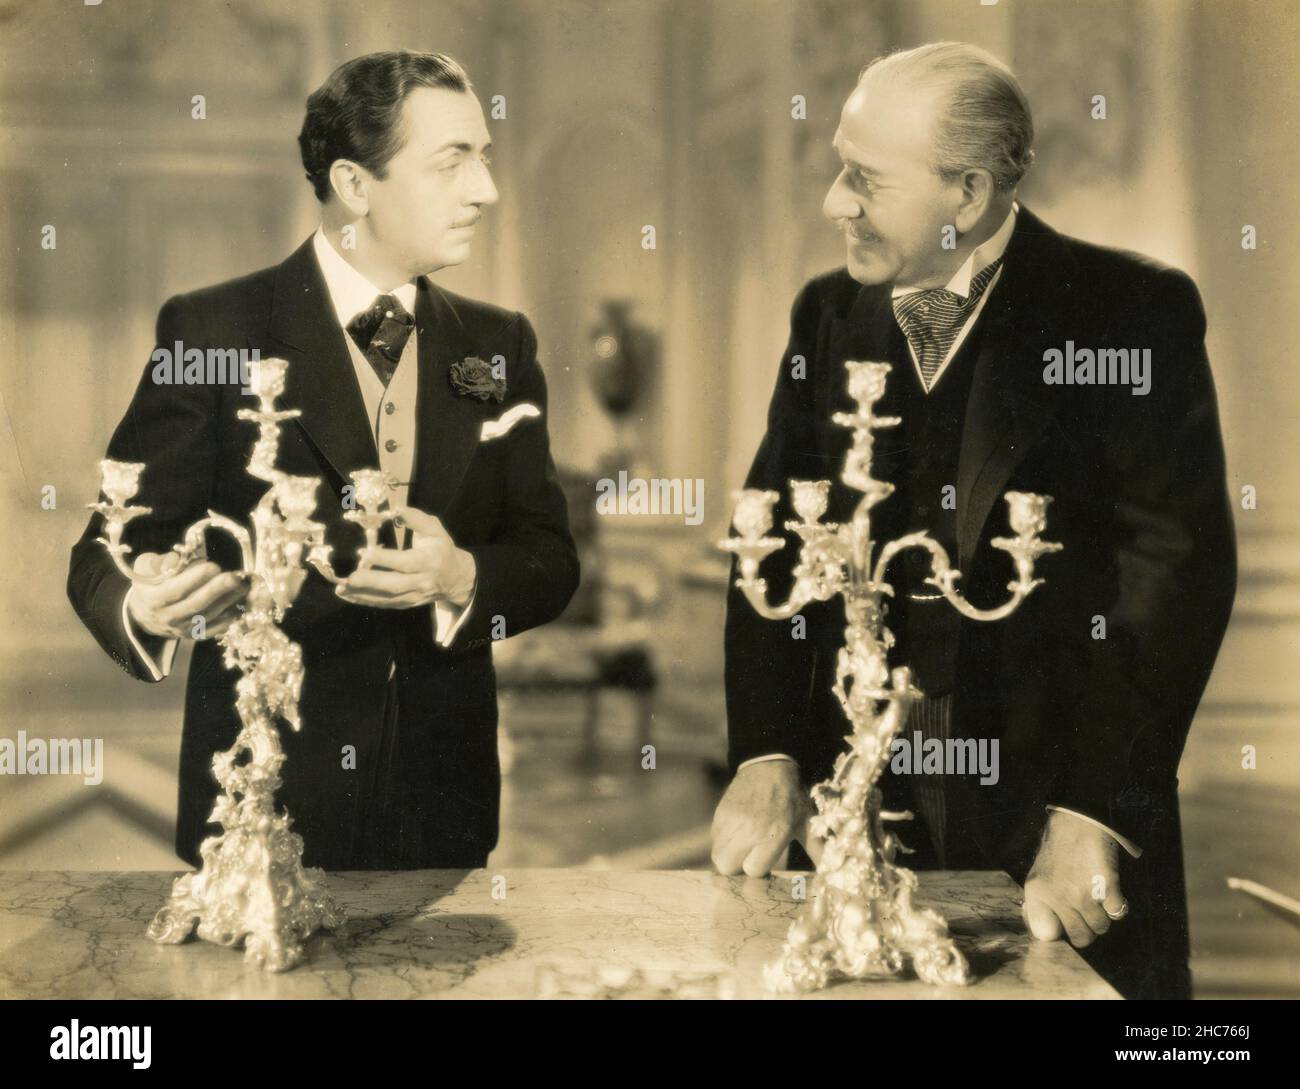 Attori americani William Powell e Henry Stephenson nel film The Emperor's Candlesticks, USA 1937 Foto Stock